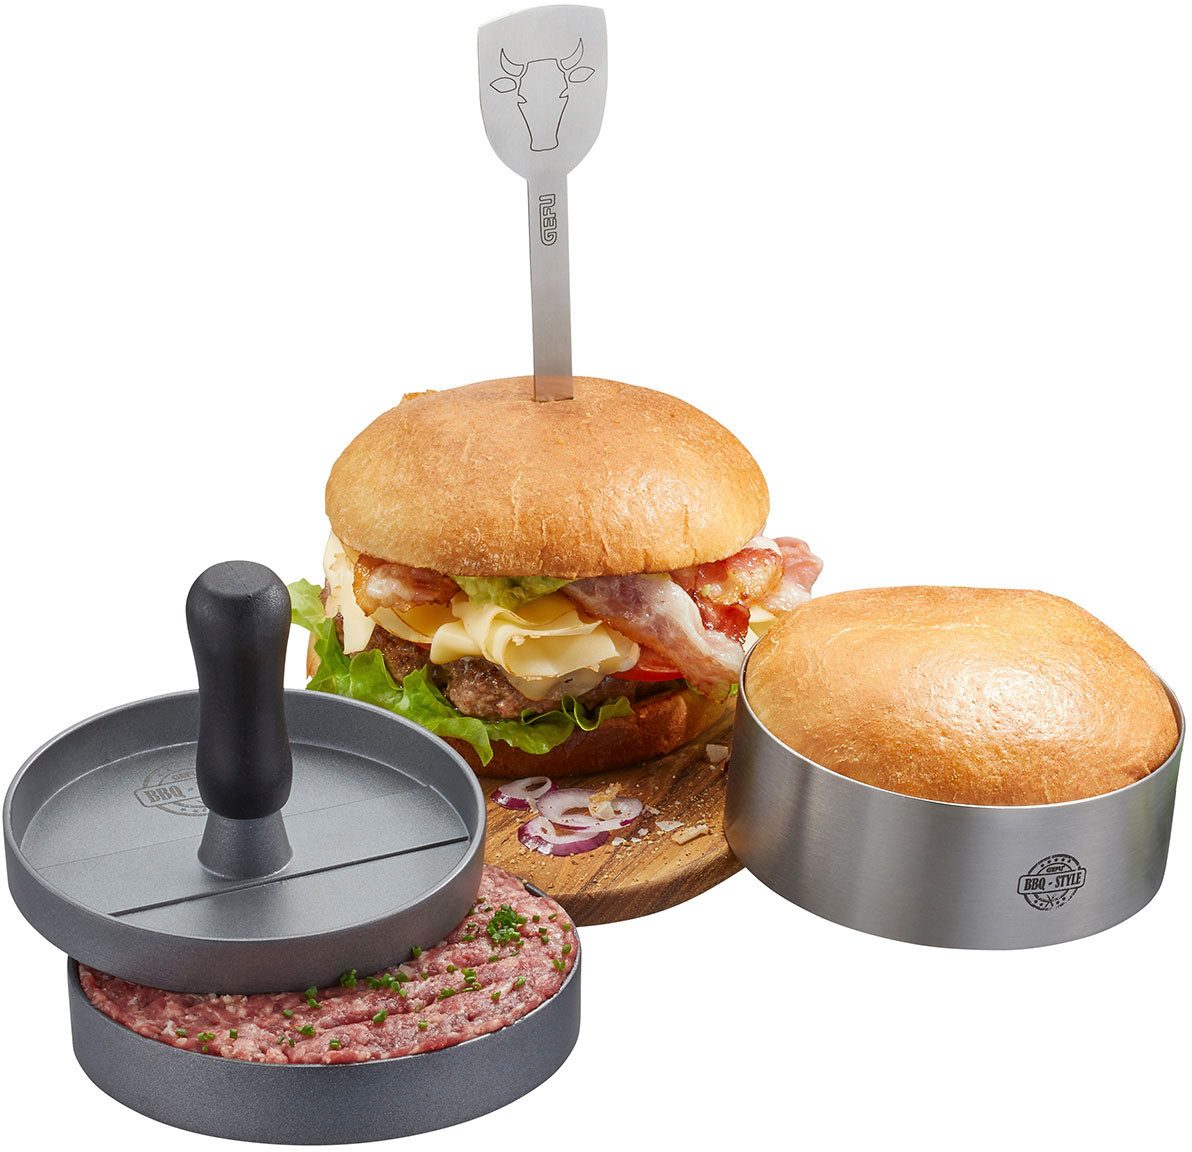 GEFU Burgerpresse BBQ (3 St), Aluminium, Edelstahl, Kunststoff, hochwertiges Edelstahl-Set für perfekte Burger, einfach zu handhaben.